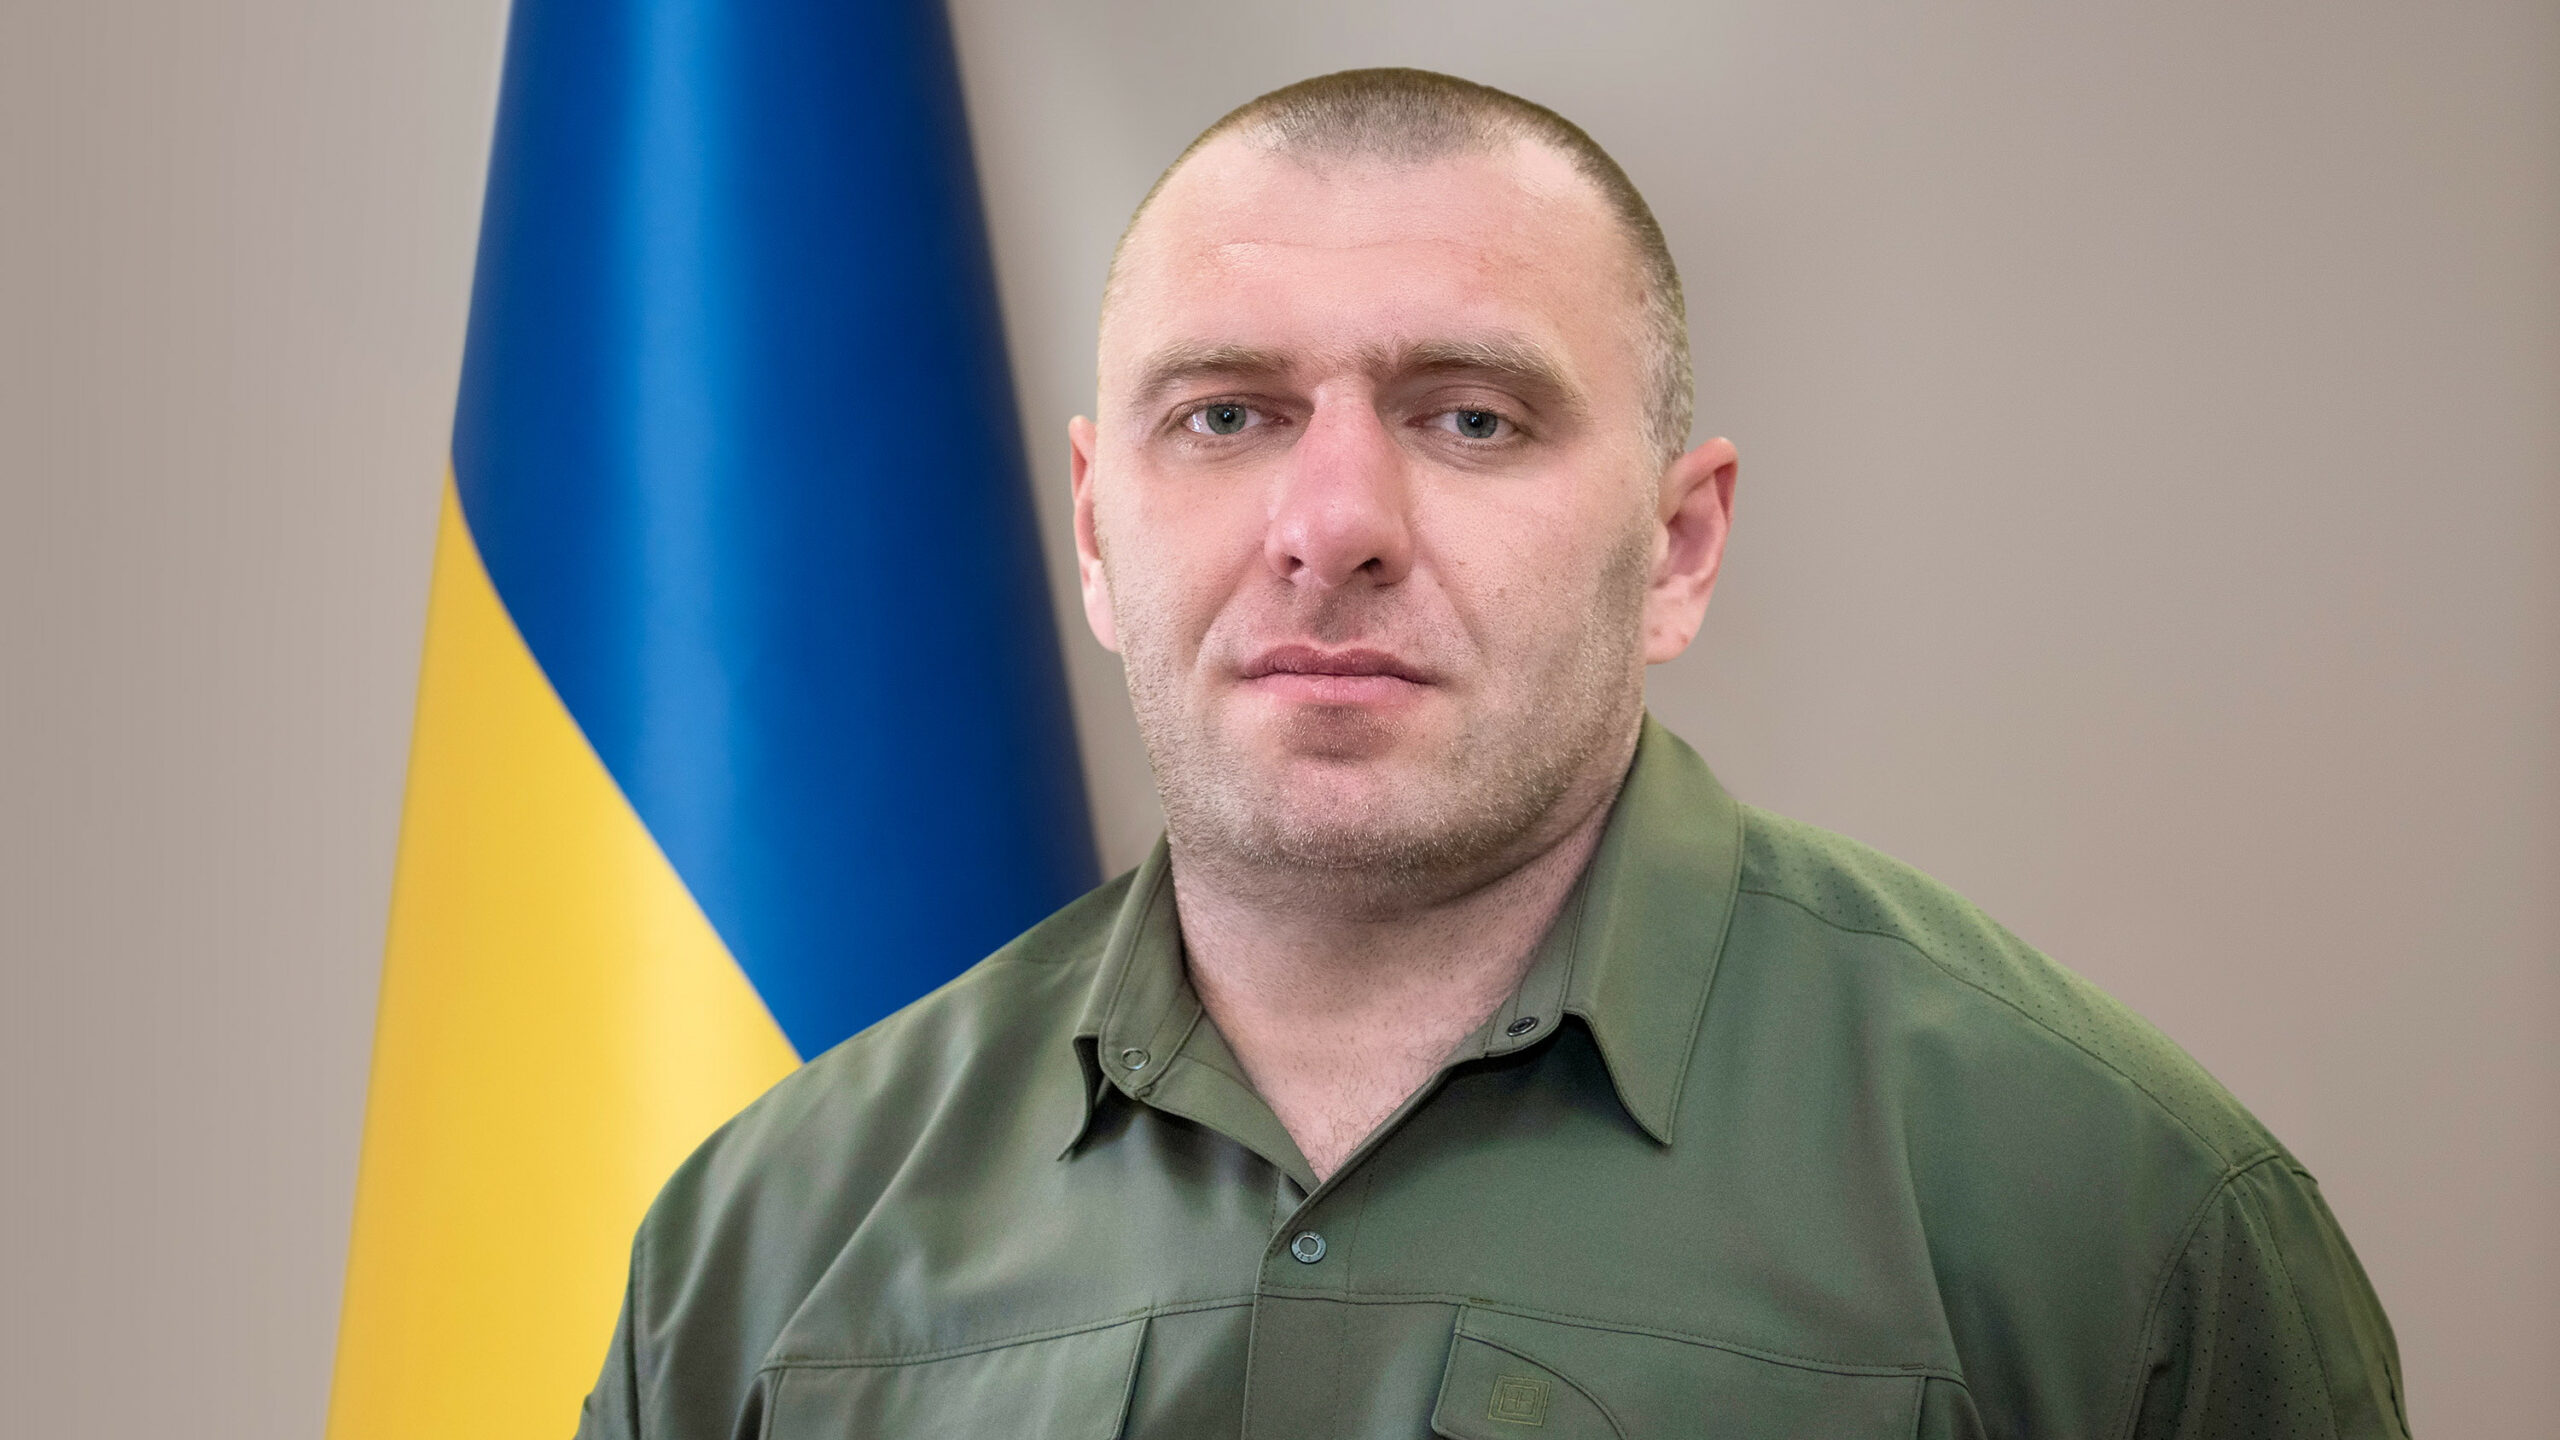 Μόσχα: Απαιτεί από το Κίεβο να παραδώσει τον επικεφαλής της ουκρανικής υπηρεσίας ασφαλείας